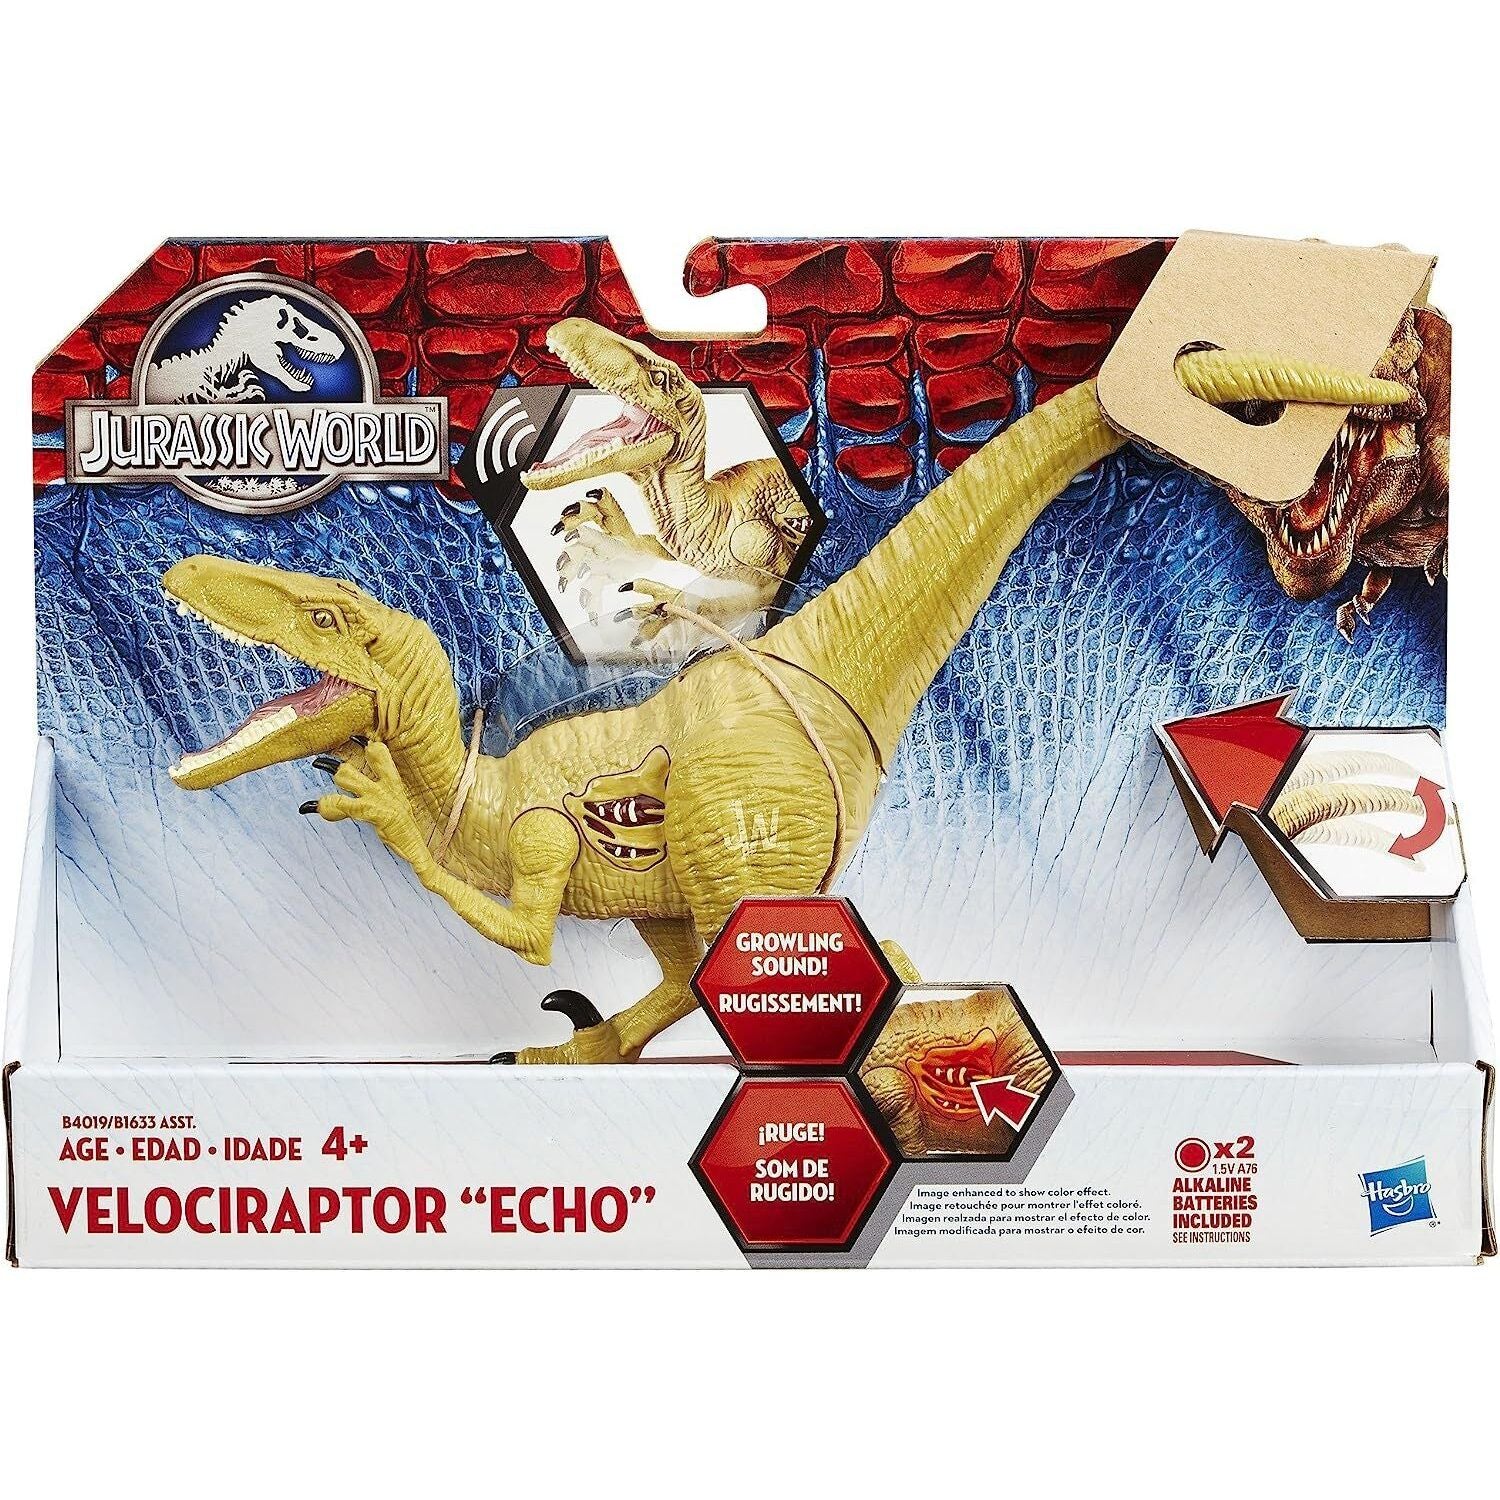 Jurassic World Dinosaur Toy - Velociraptor (Echo)